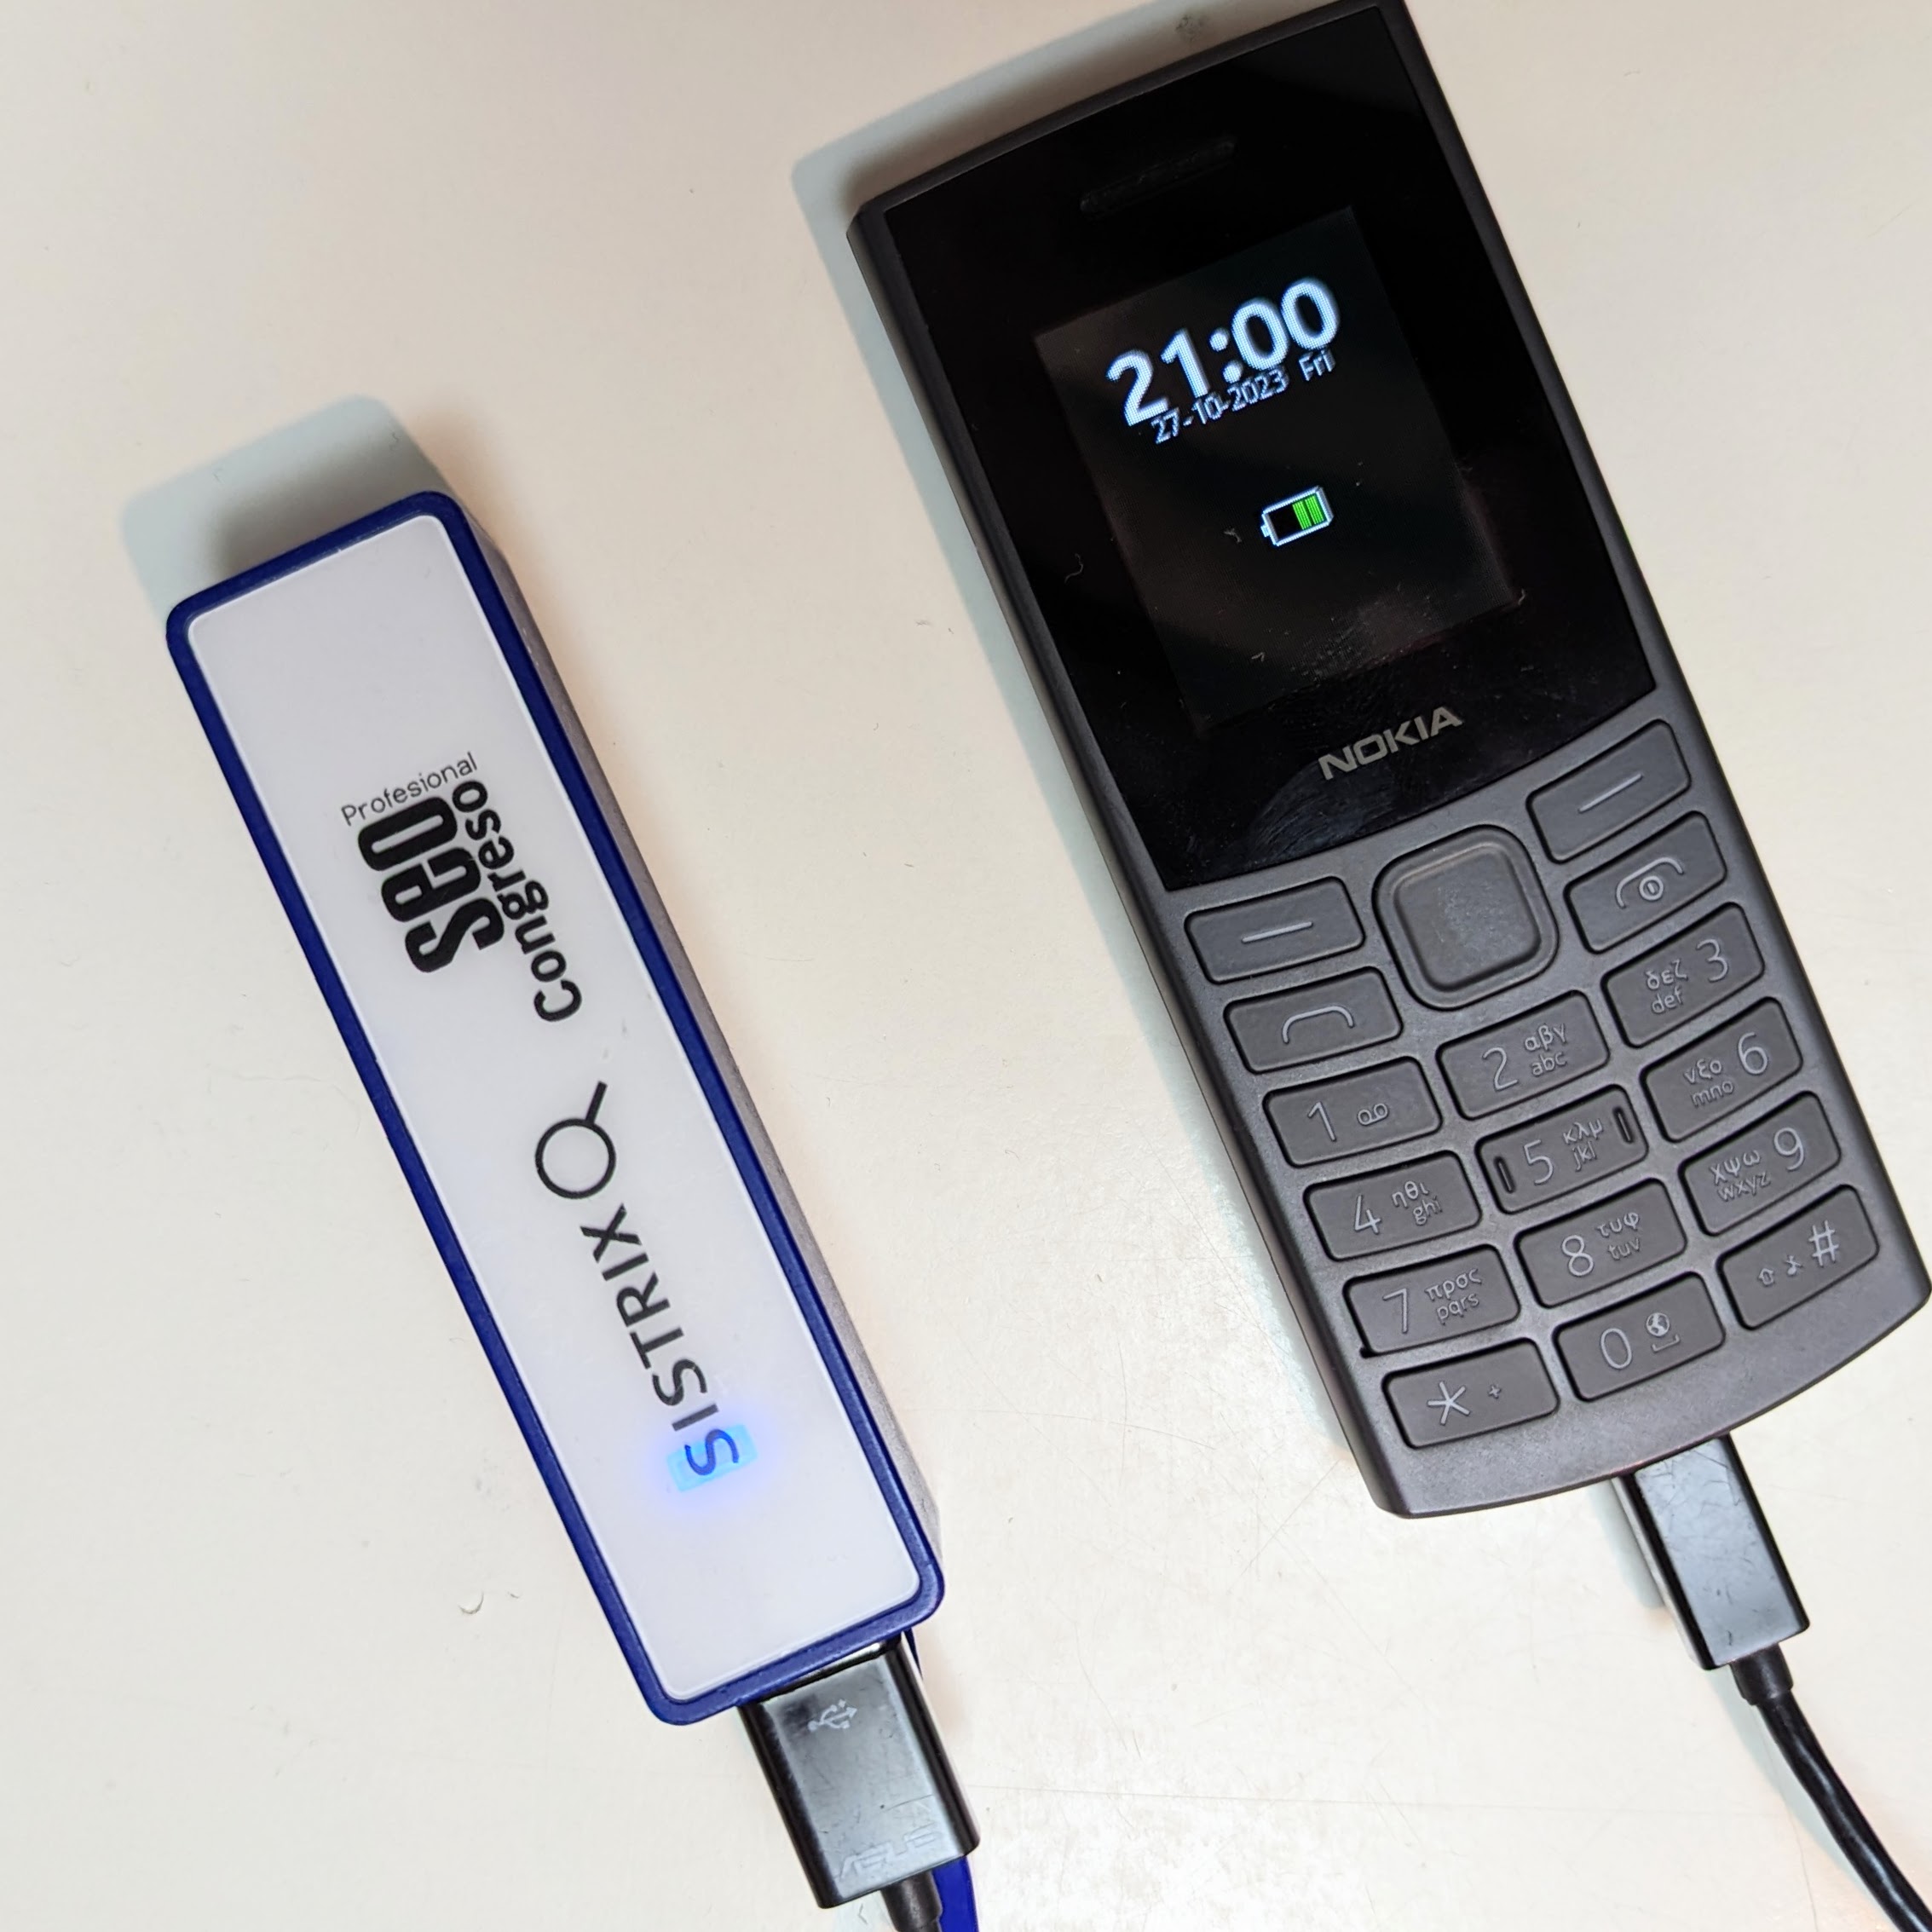 Nokia 105 4g review. 